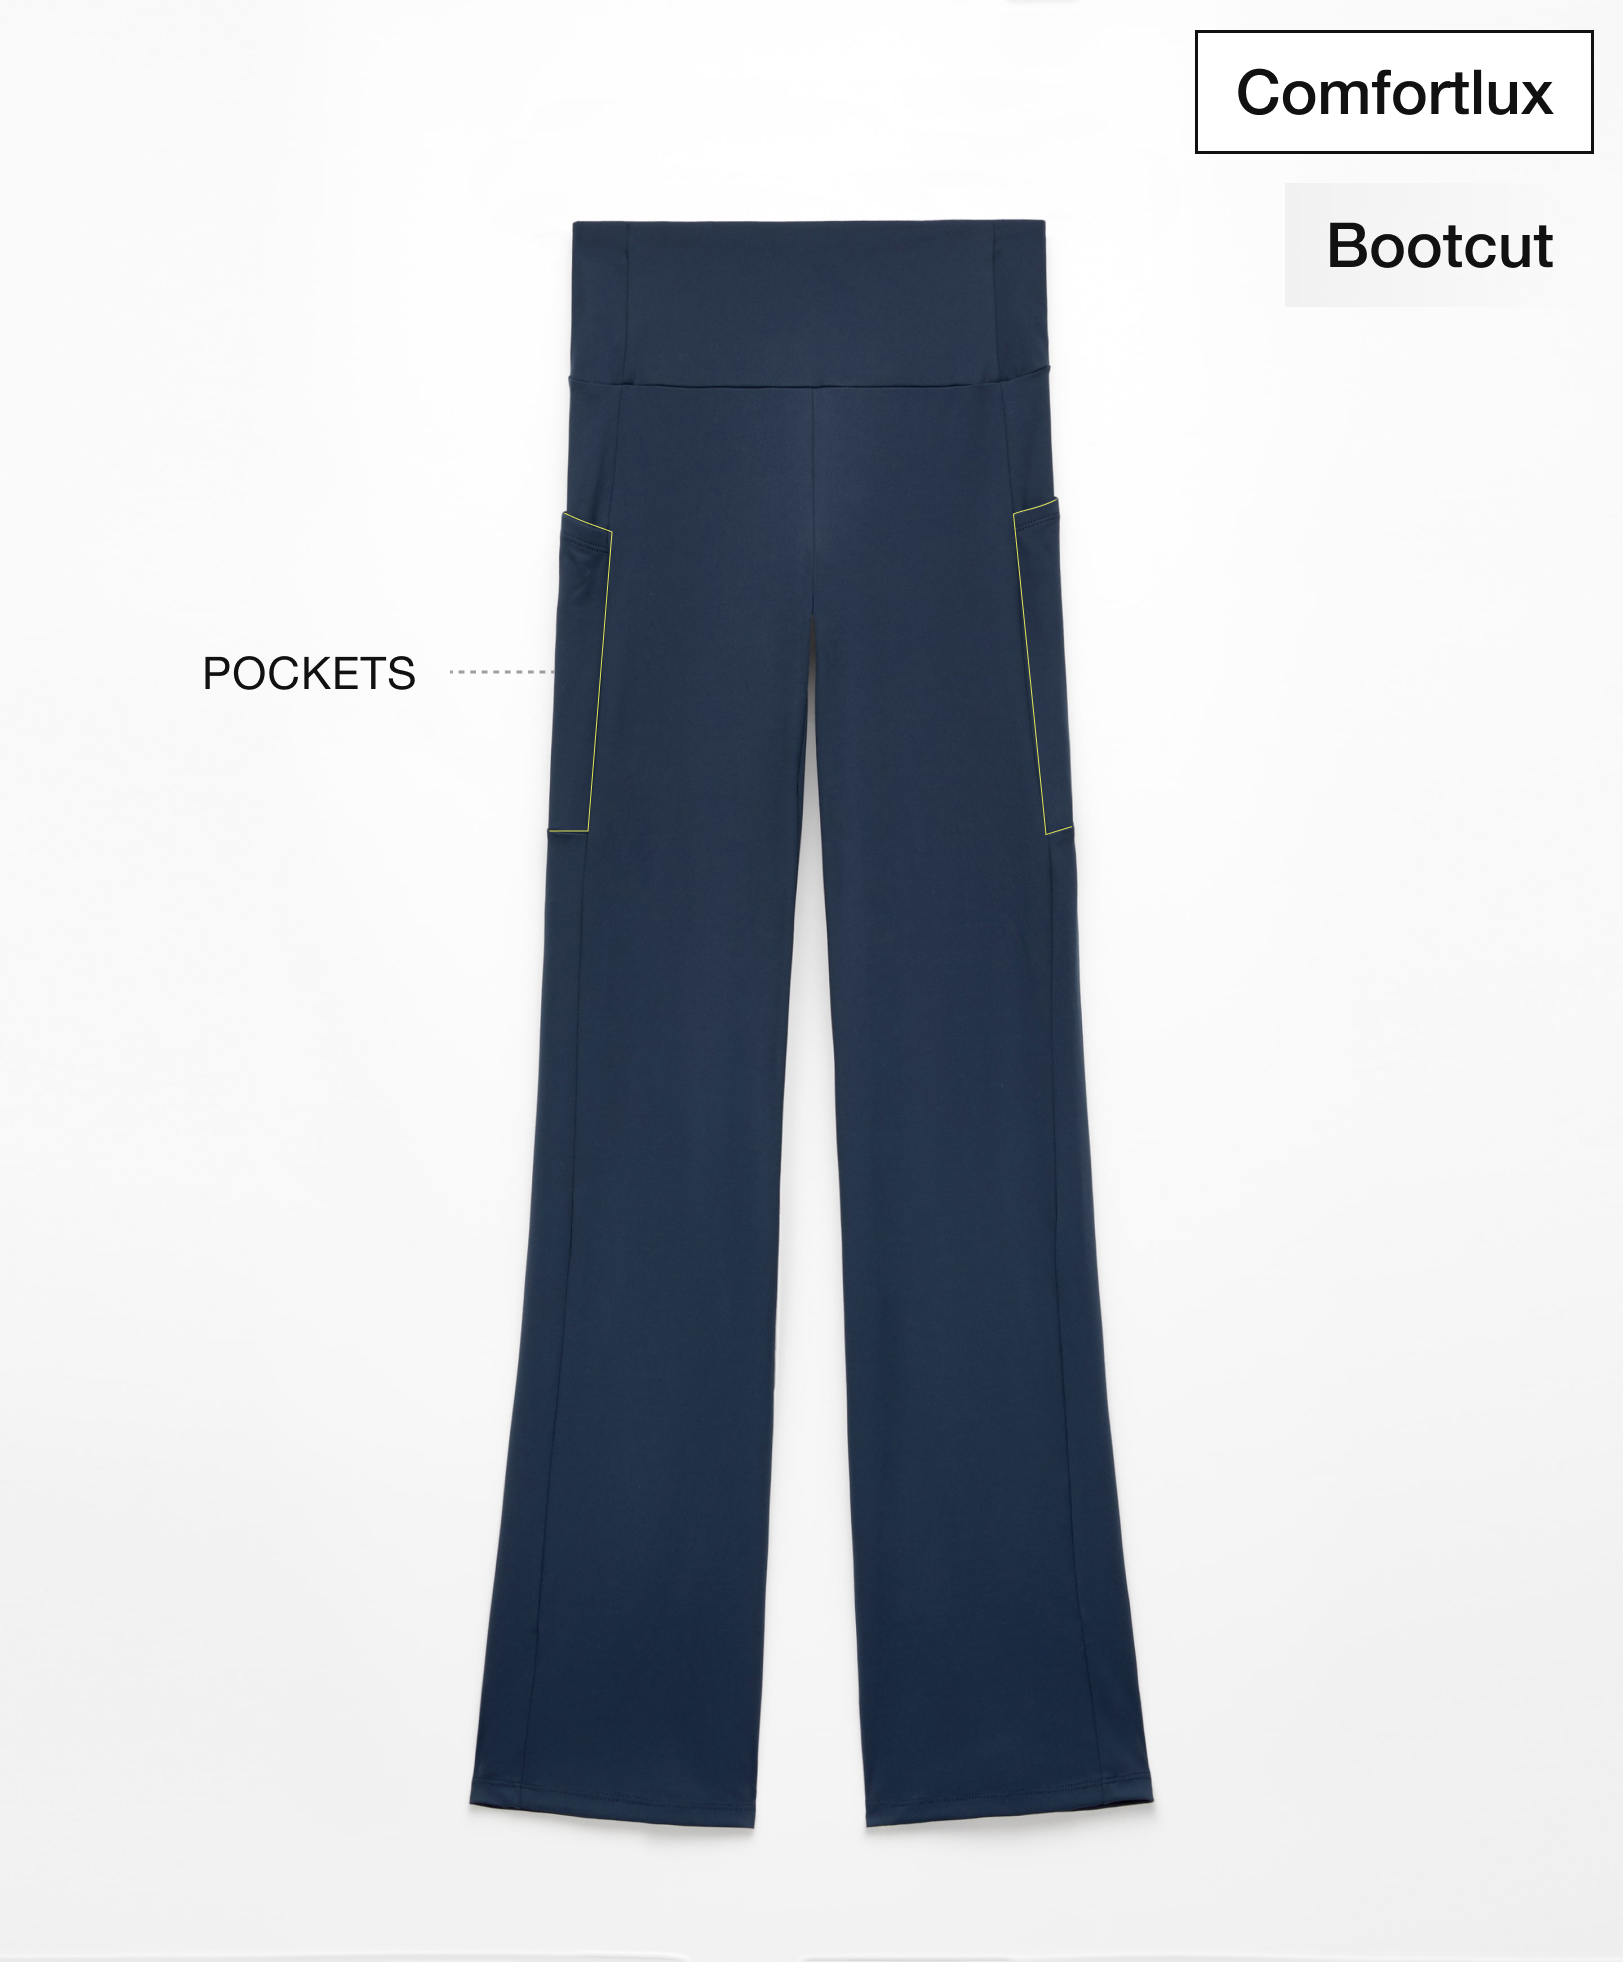 Comfortlux bootcut broek met pockets